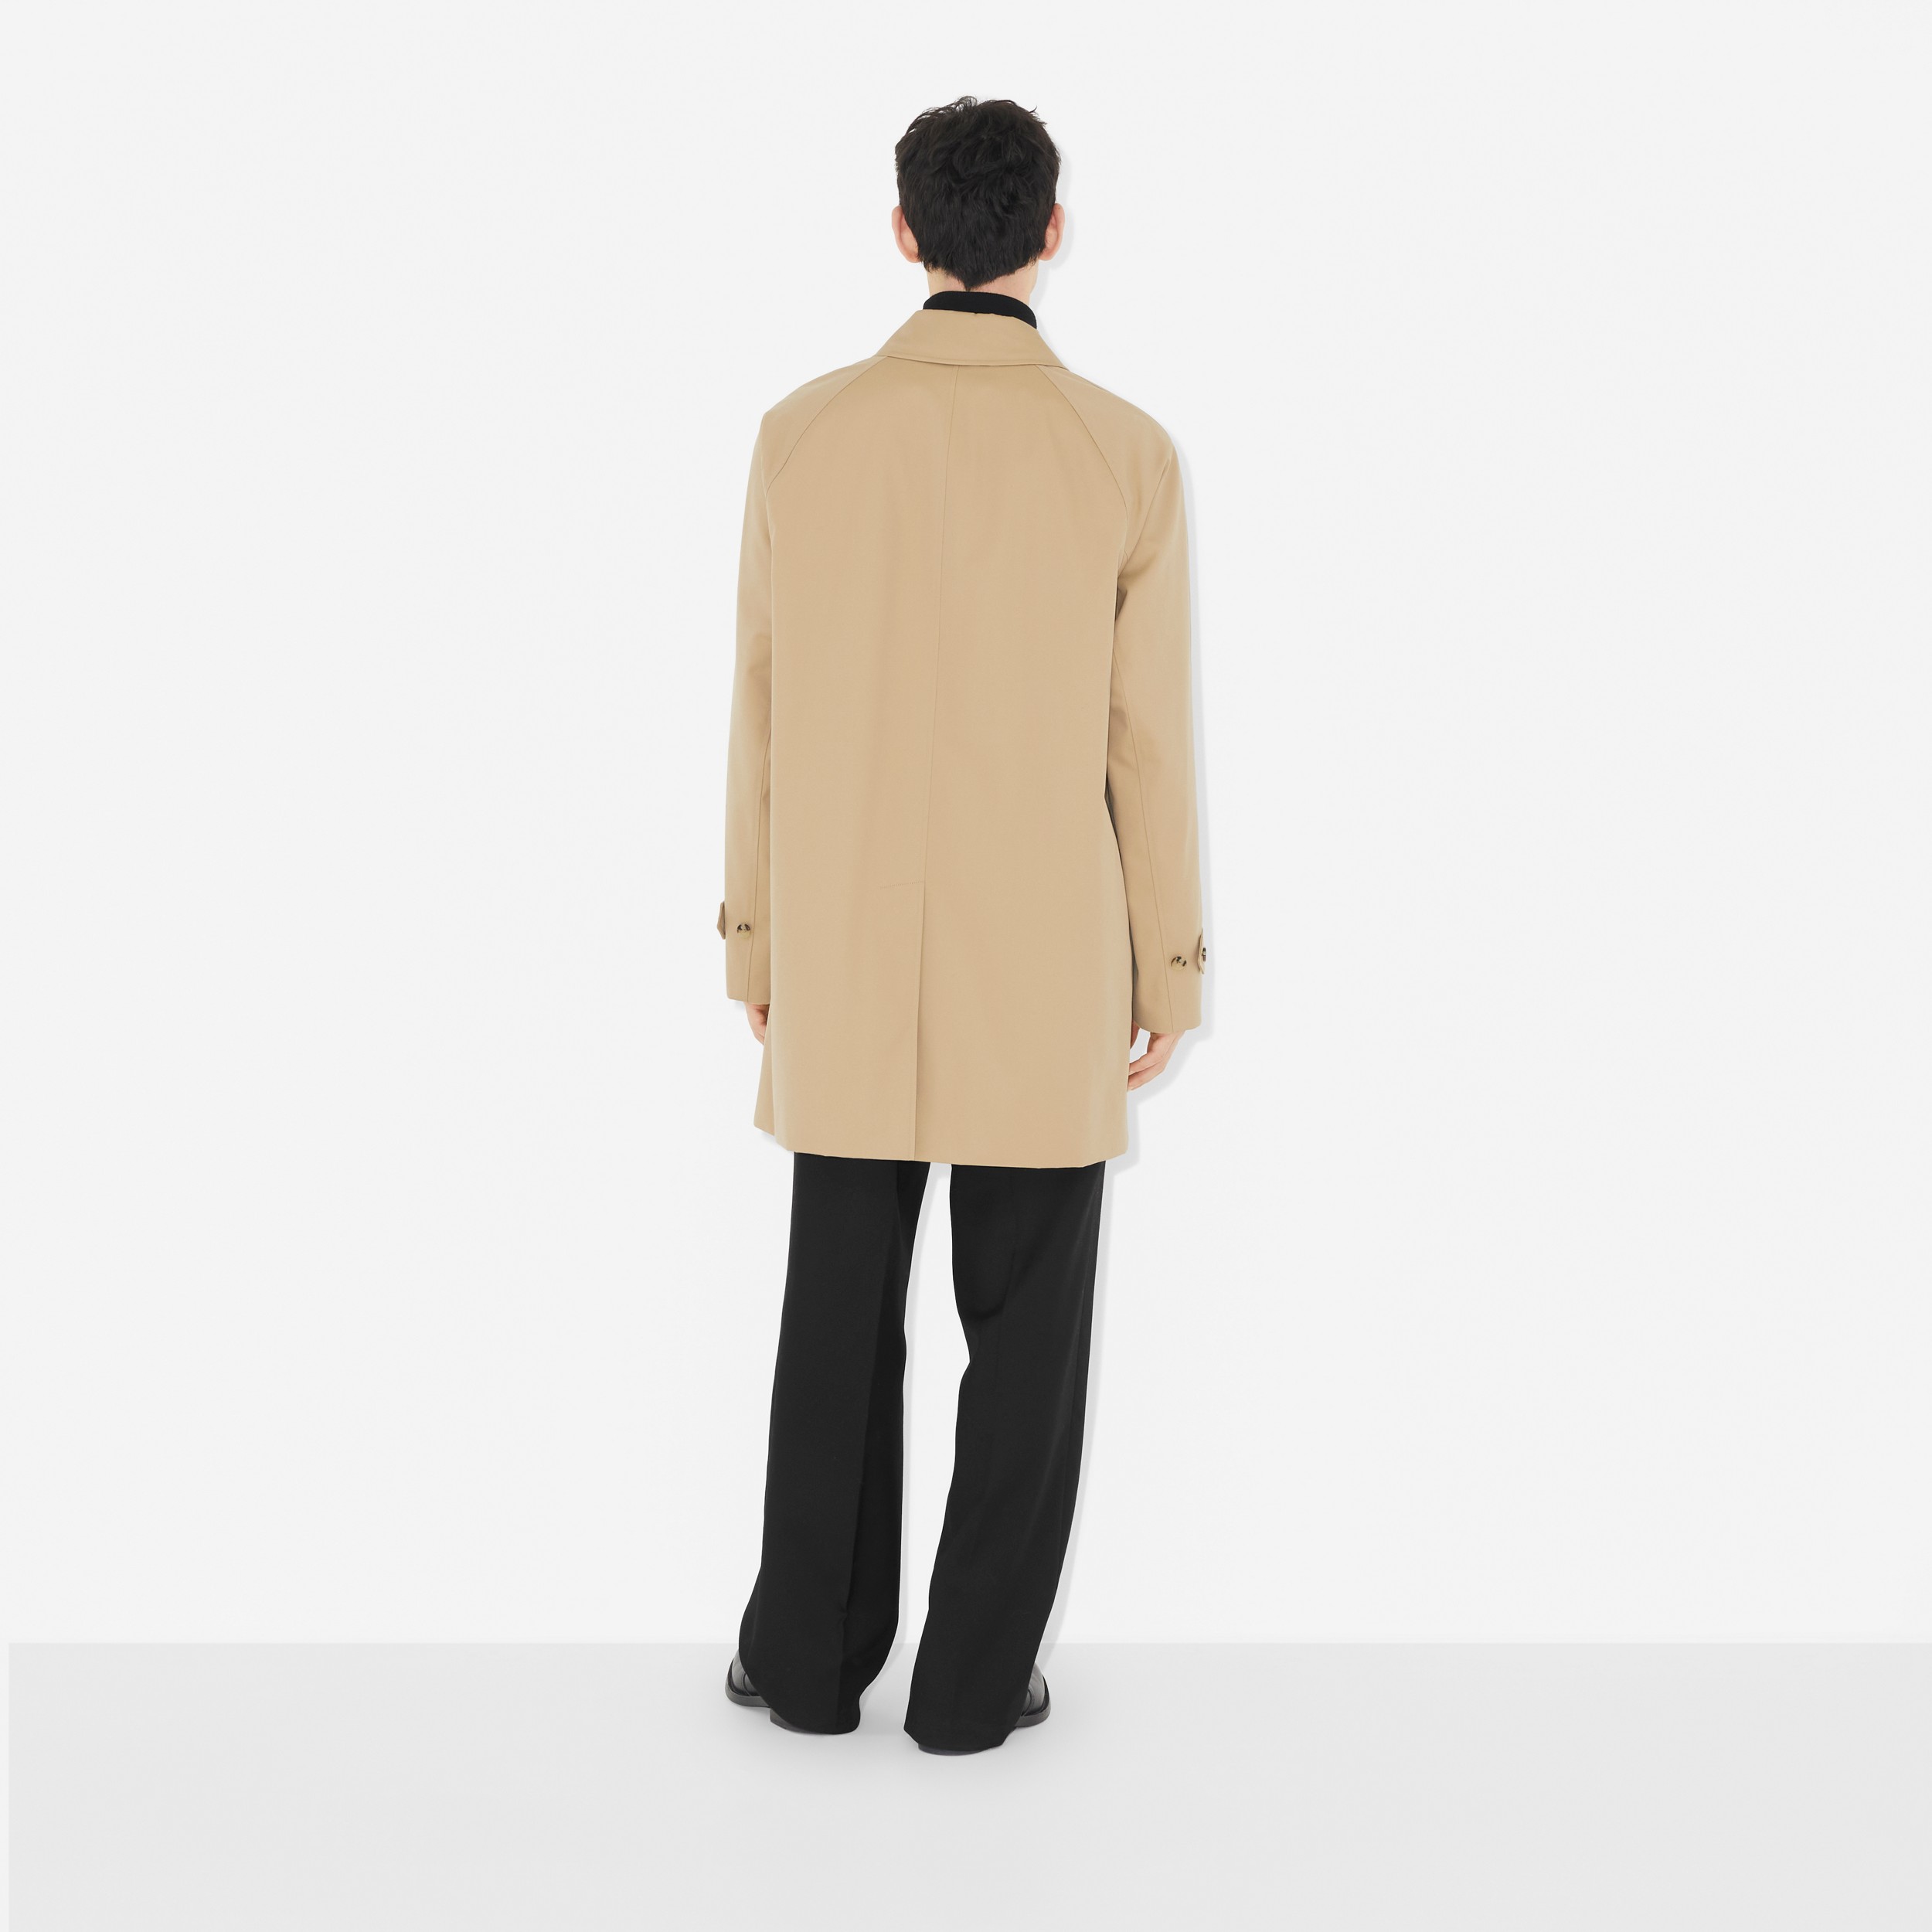 卡姆登版型 – 短款 Heritage 轻便大衣 (蜂蜜色) - 男士 | Burberry® 博柏利官网 - 4